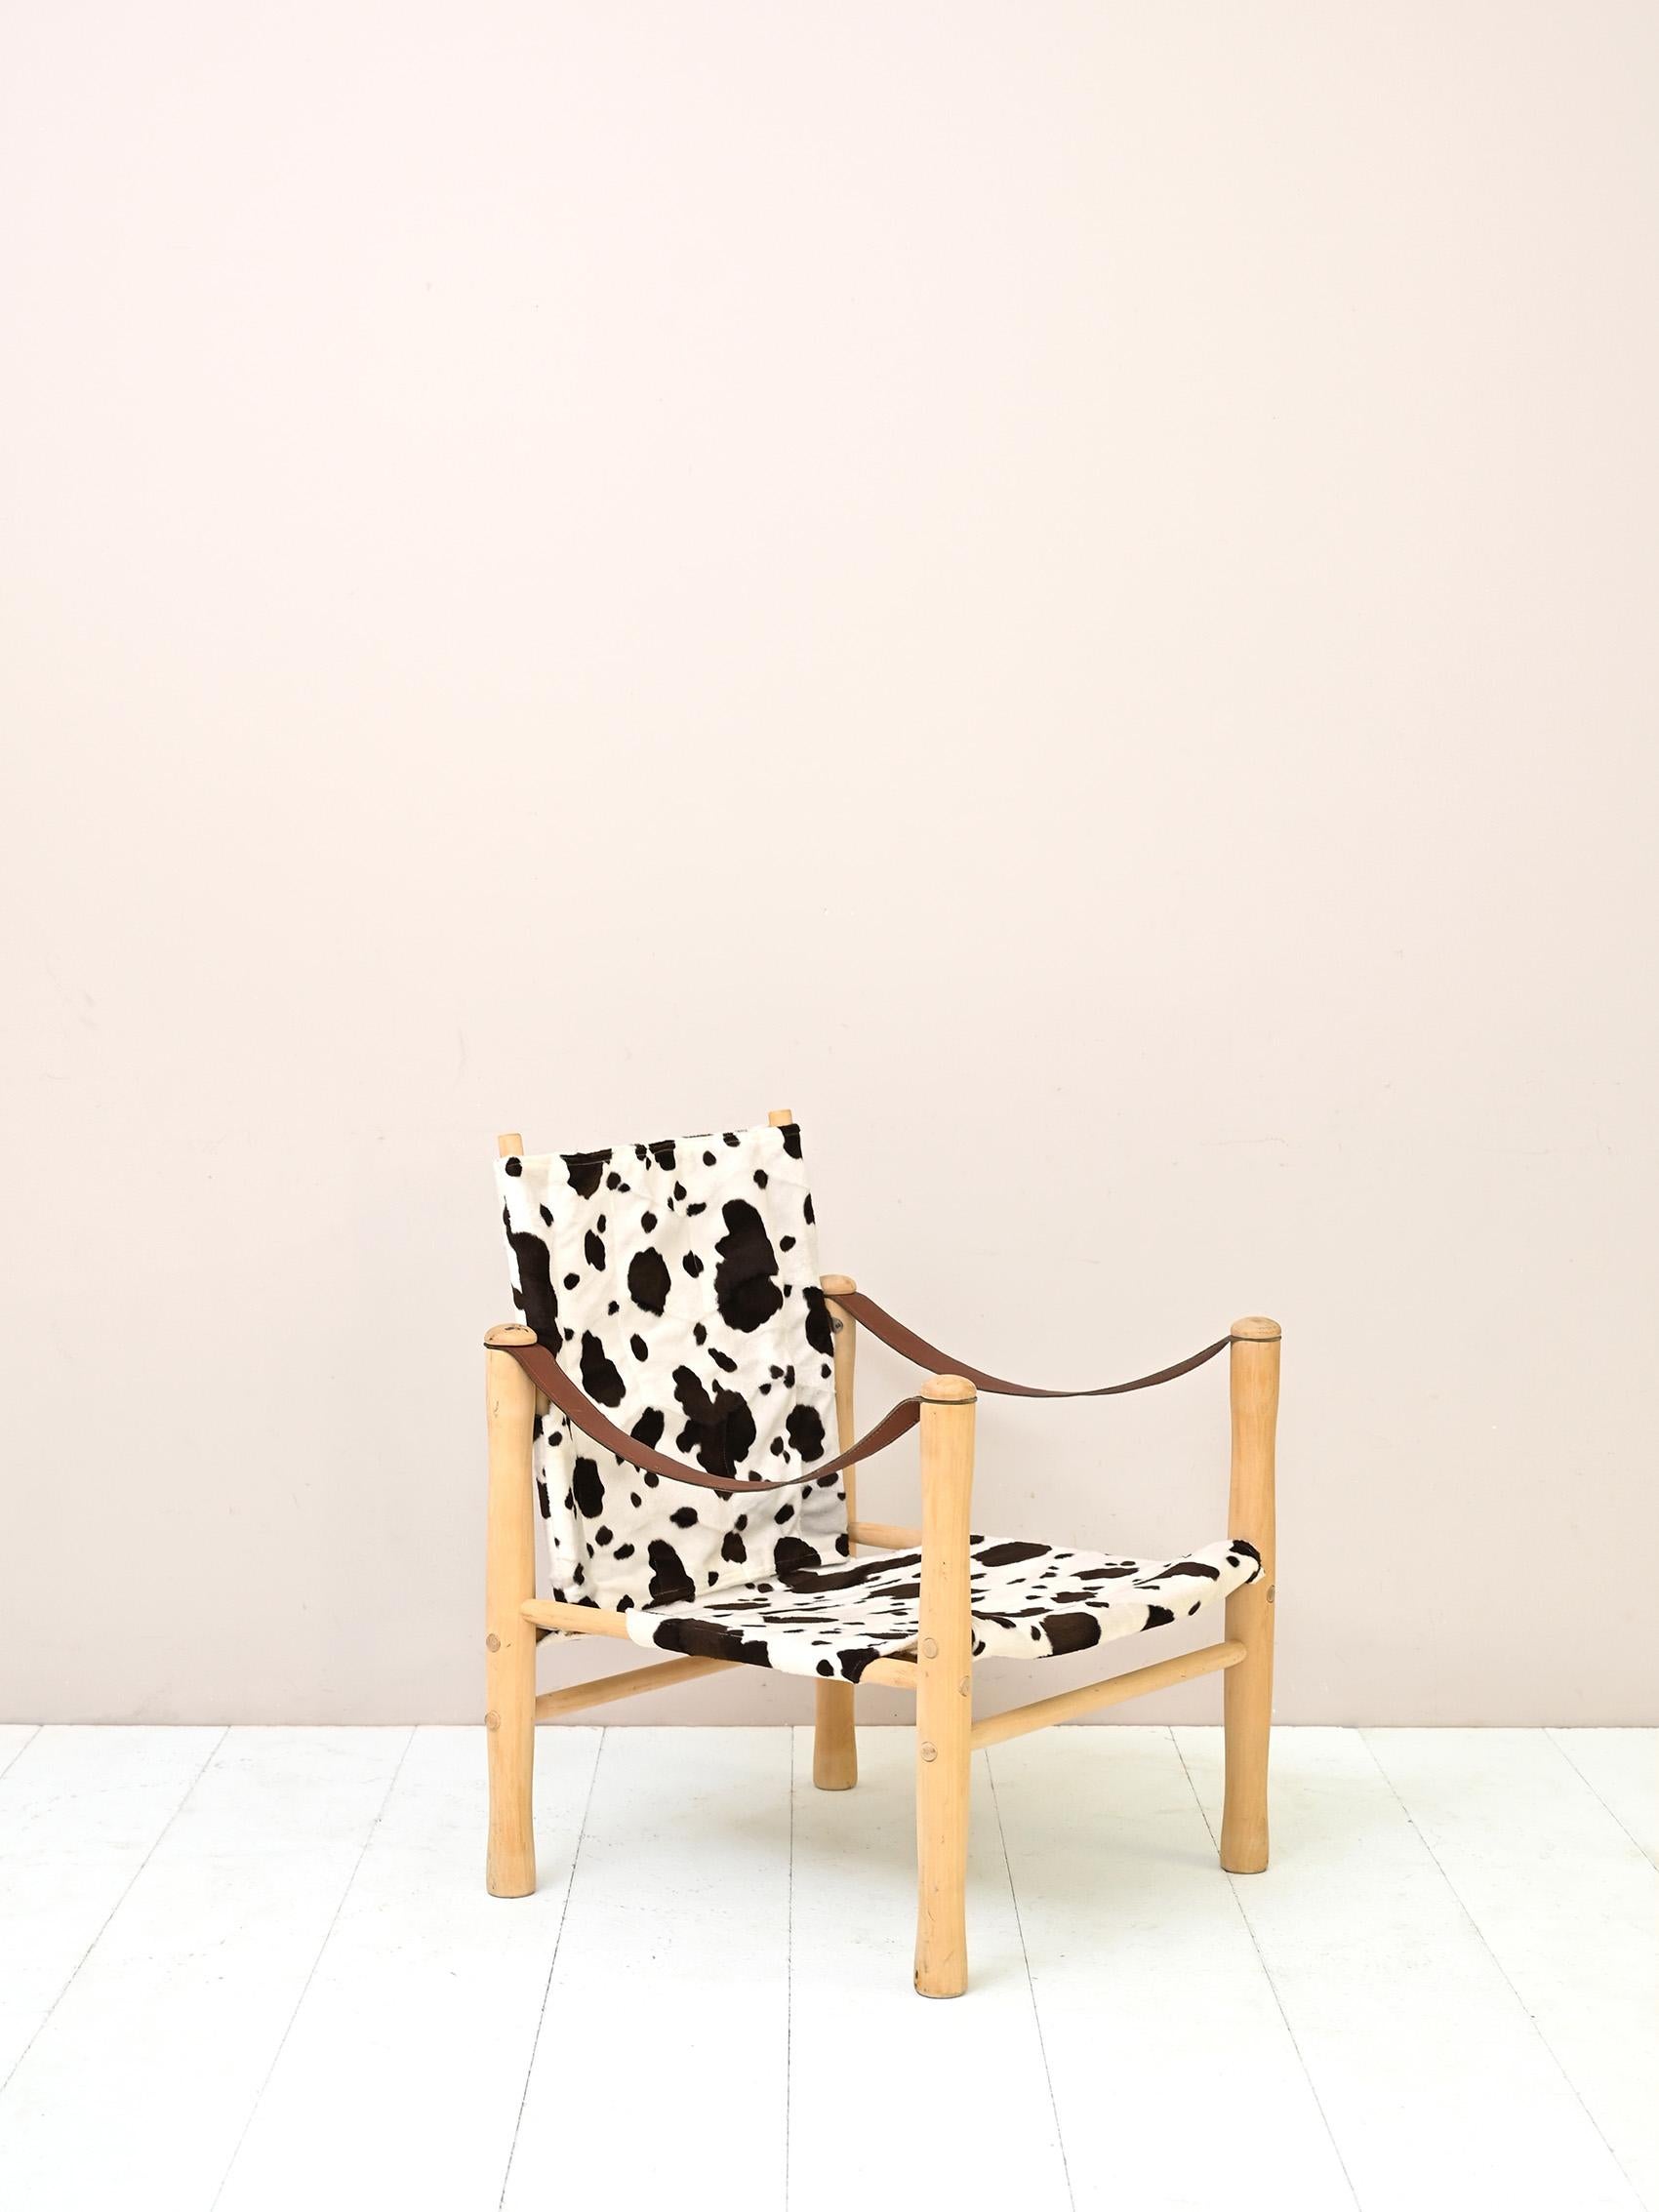 Vintage-Sessel aus Holz und gesprenkeltem Stoff, hergestellt von der Firma Nordiska Kompaniet.
Besonderer Sitz mit beweglicher Rückenlehne. Ein originelles und modernes Design, das in der Lage ist, die
Charakter für jede Umgebung.

Das Gestell